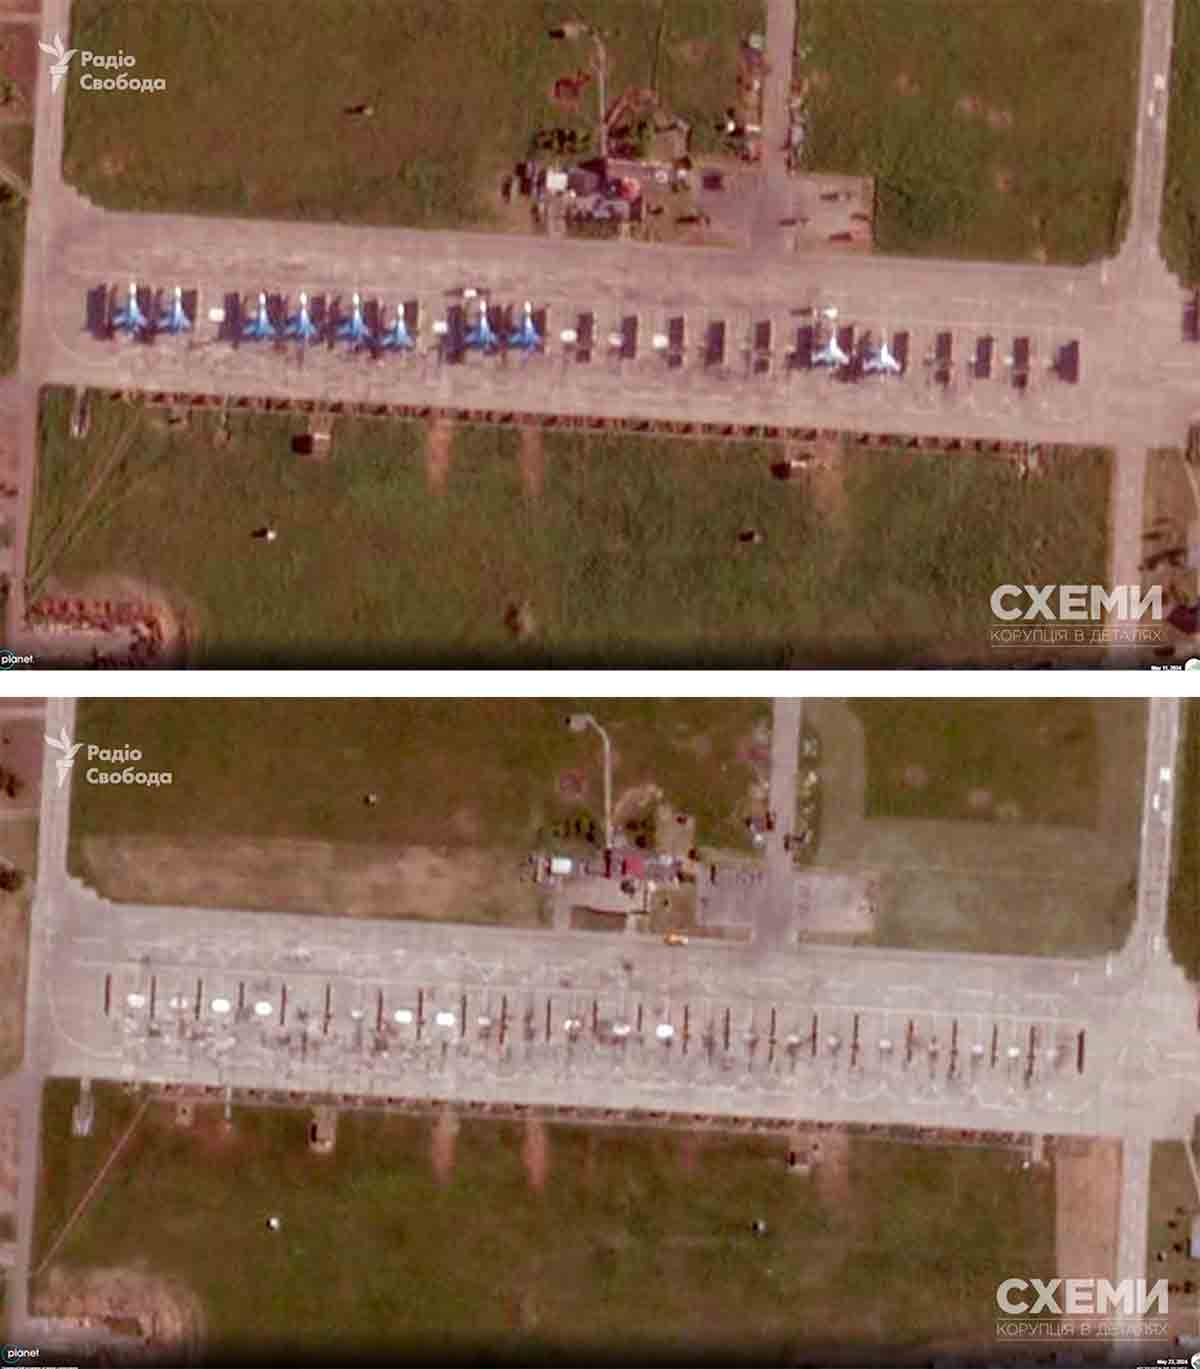 Samolot grupy 'Rosyjscy Rycerze' zniszczony w ataku drona na rosyjskiej bazie lotniczej w Kushchevskaya. Zdjęcie: Reprodukcja cxemu